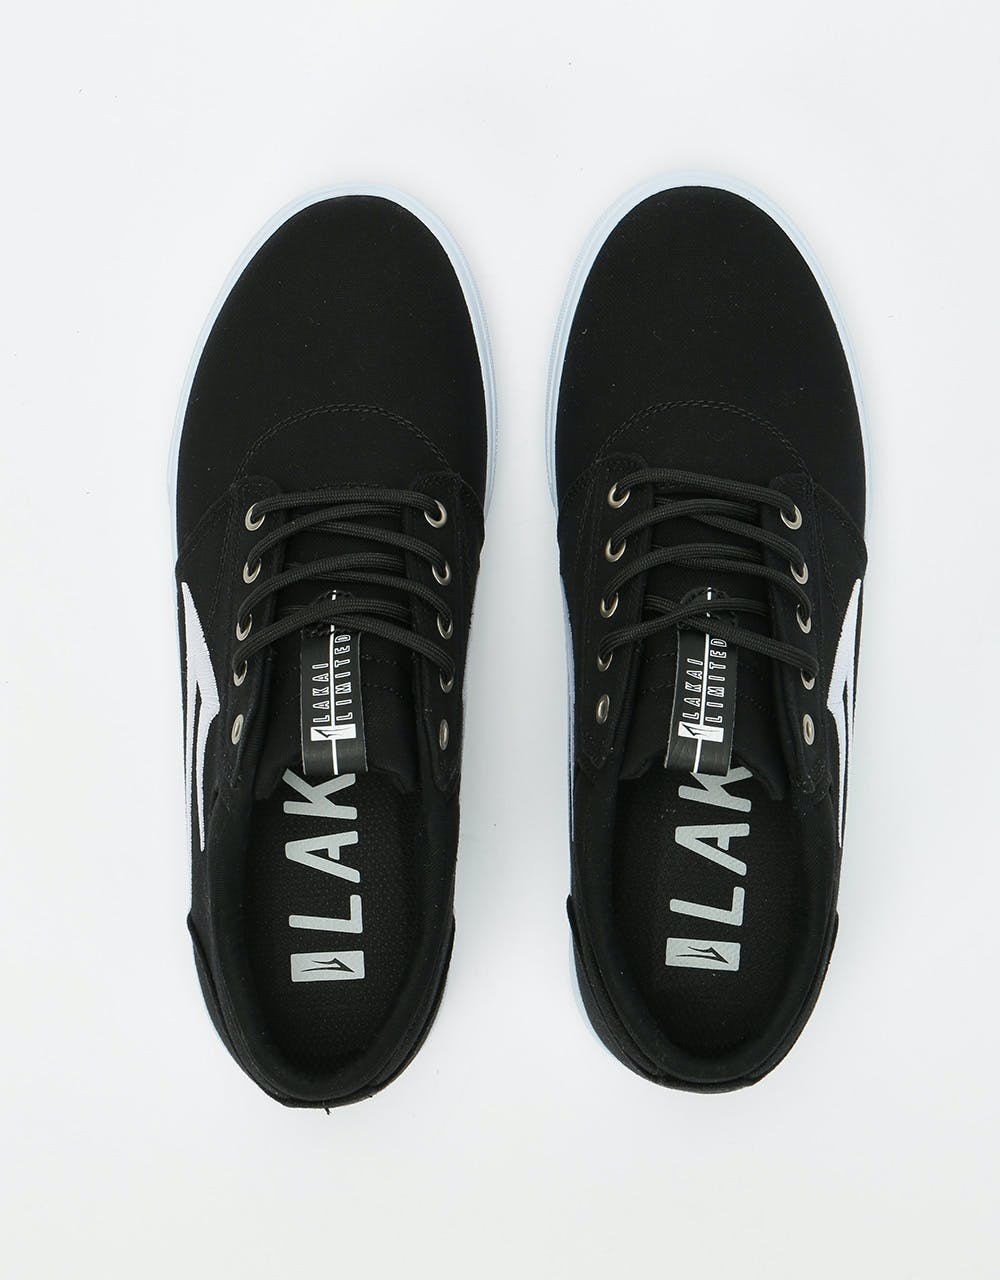 Lakai Griffin Textile Skate Shoes - Black Canvas